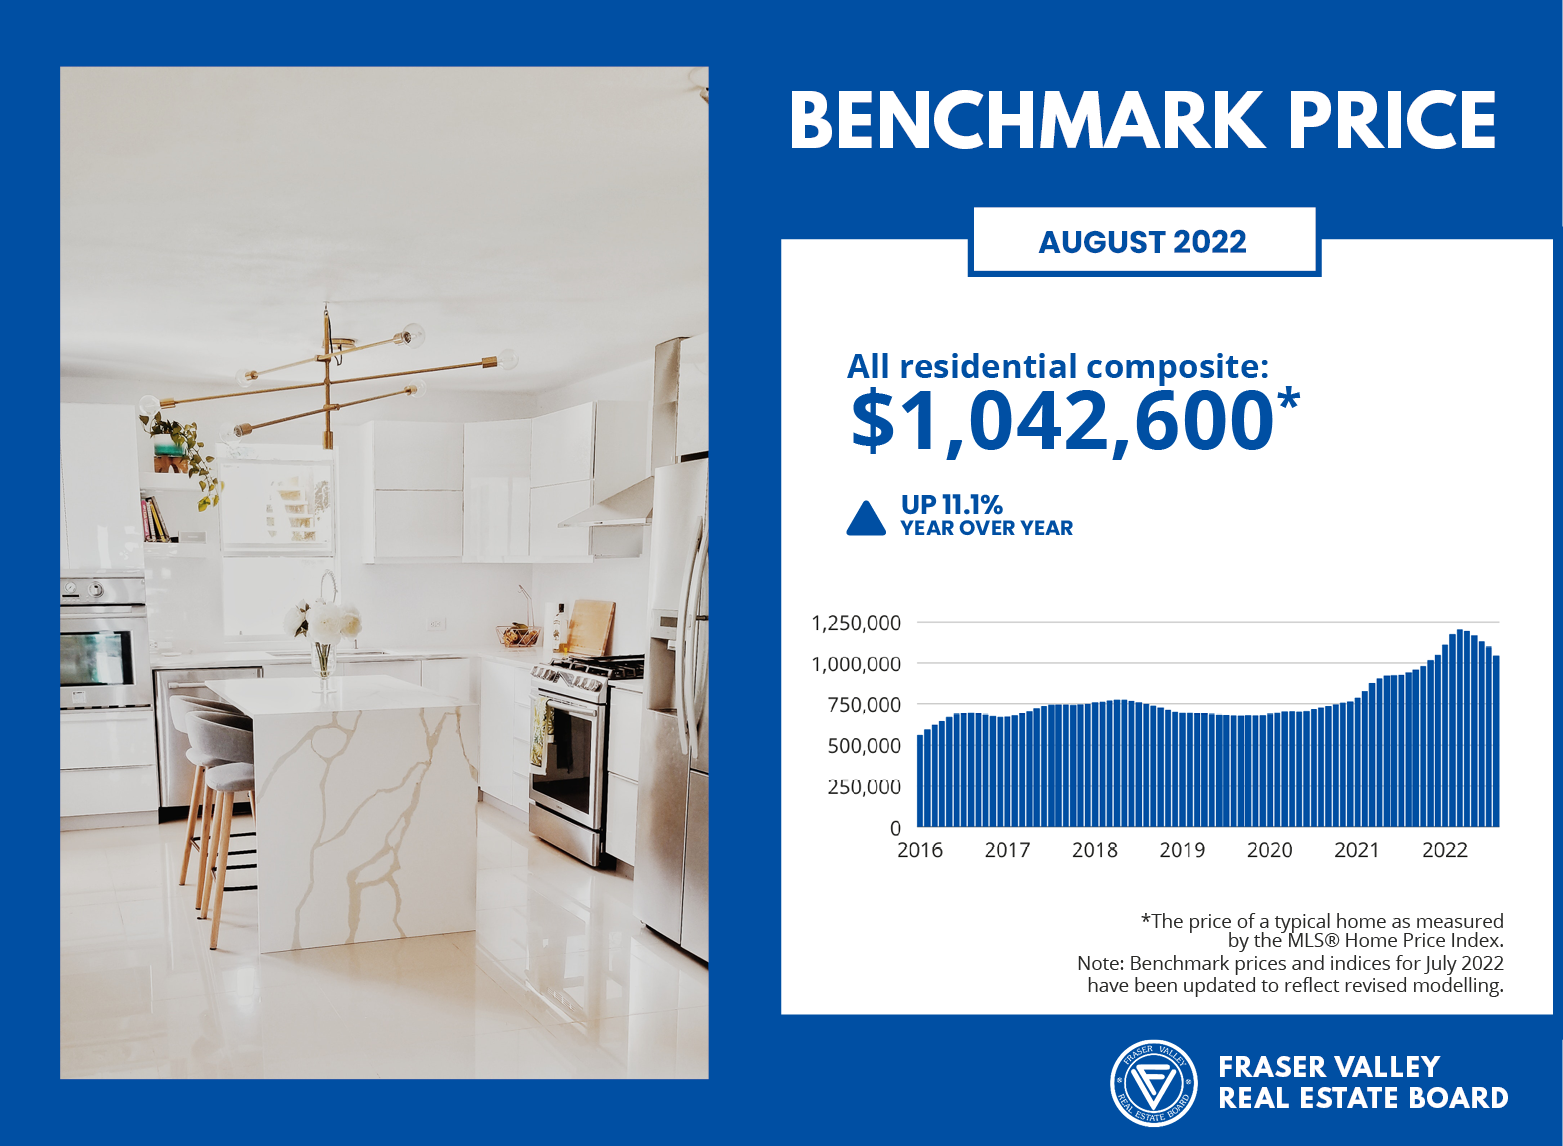 Fraser Valley Housing Market Statistics - August 2022 Benchmark Price